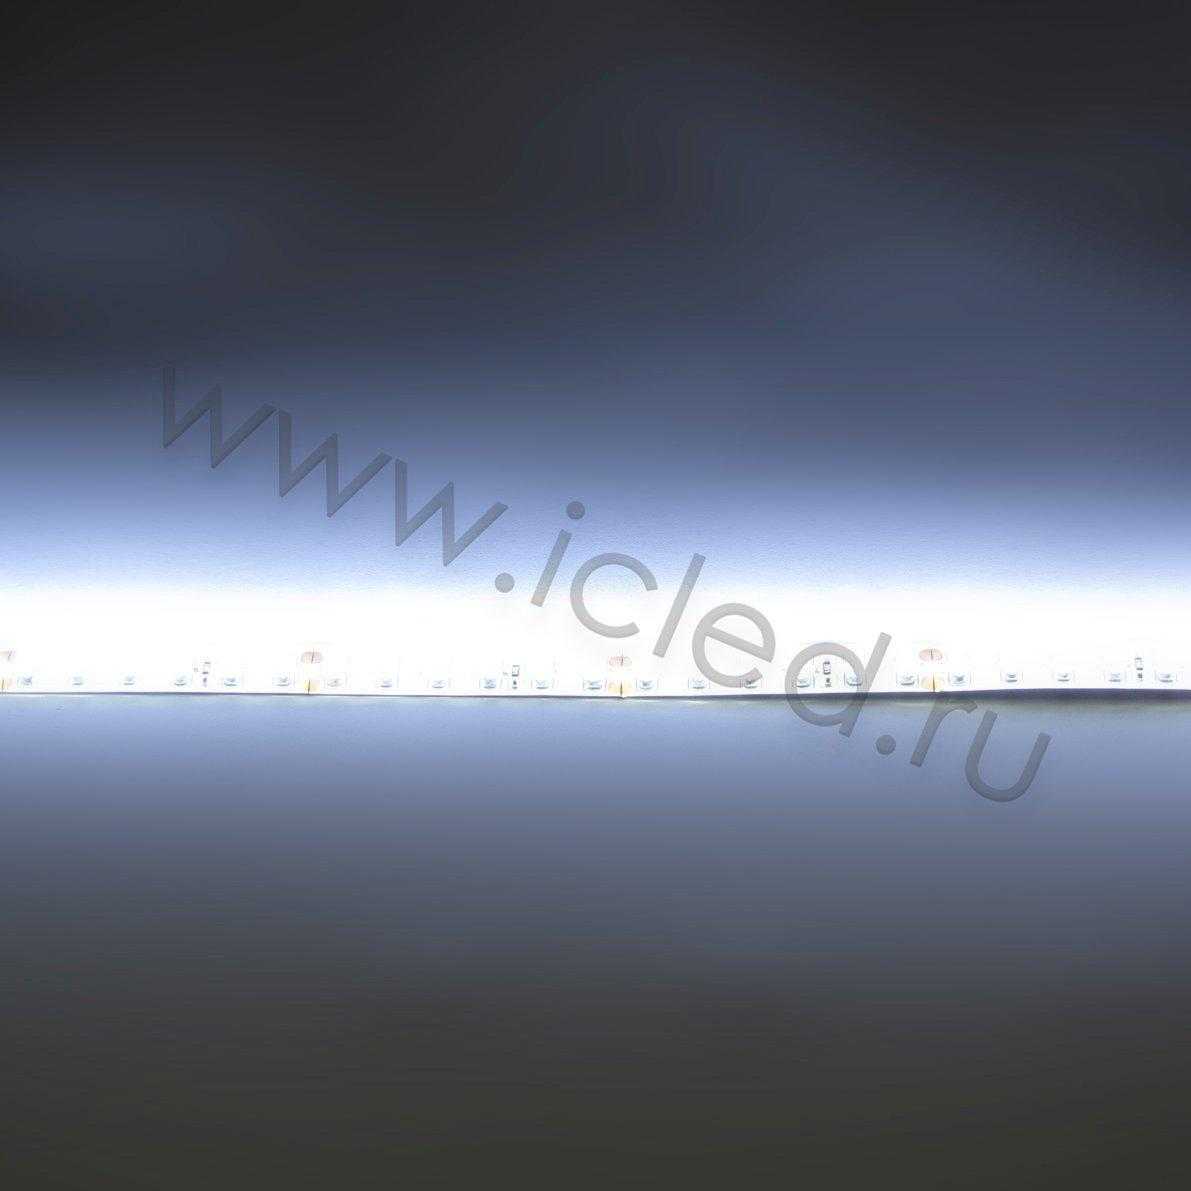 Влагозащищенные светодиодные ленты Светодиодная лента Standart PRO class, 3528, 120 led/m, White, 24V, IP65 Icled